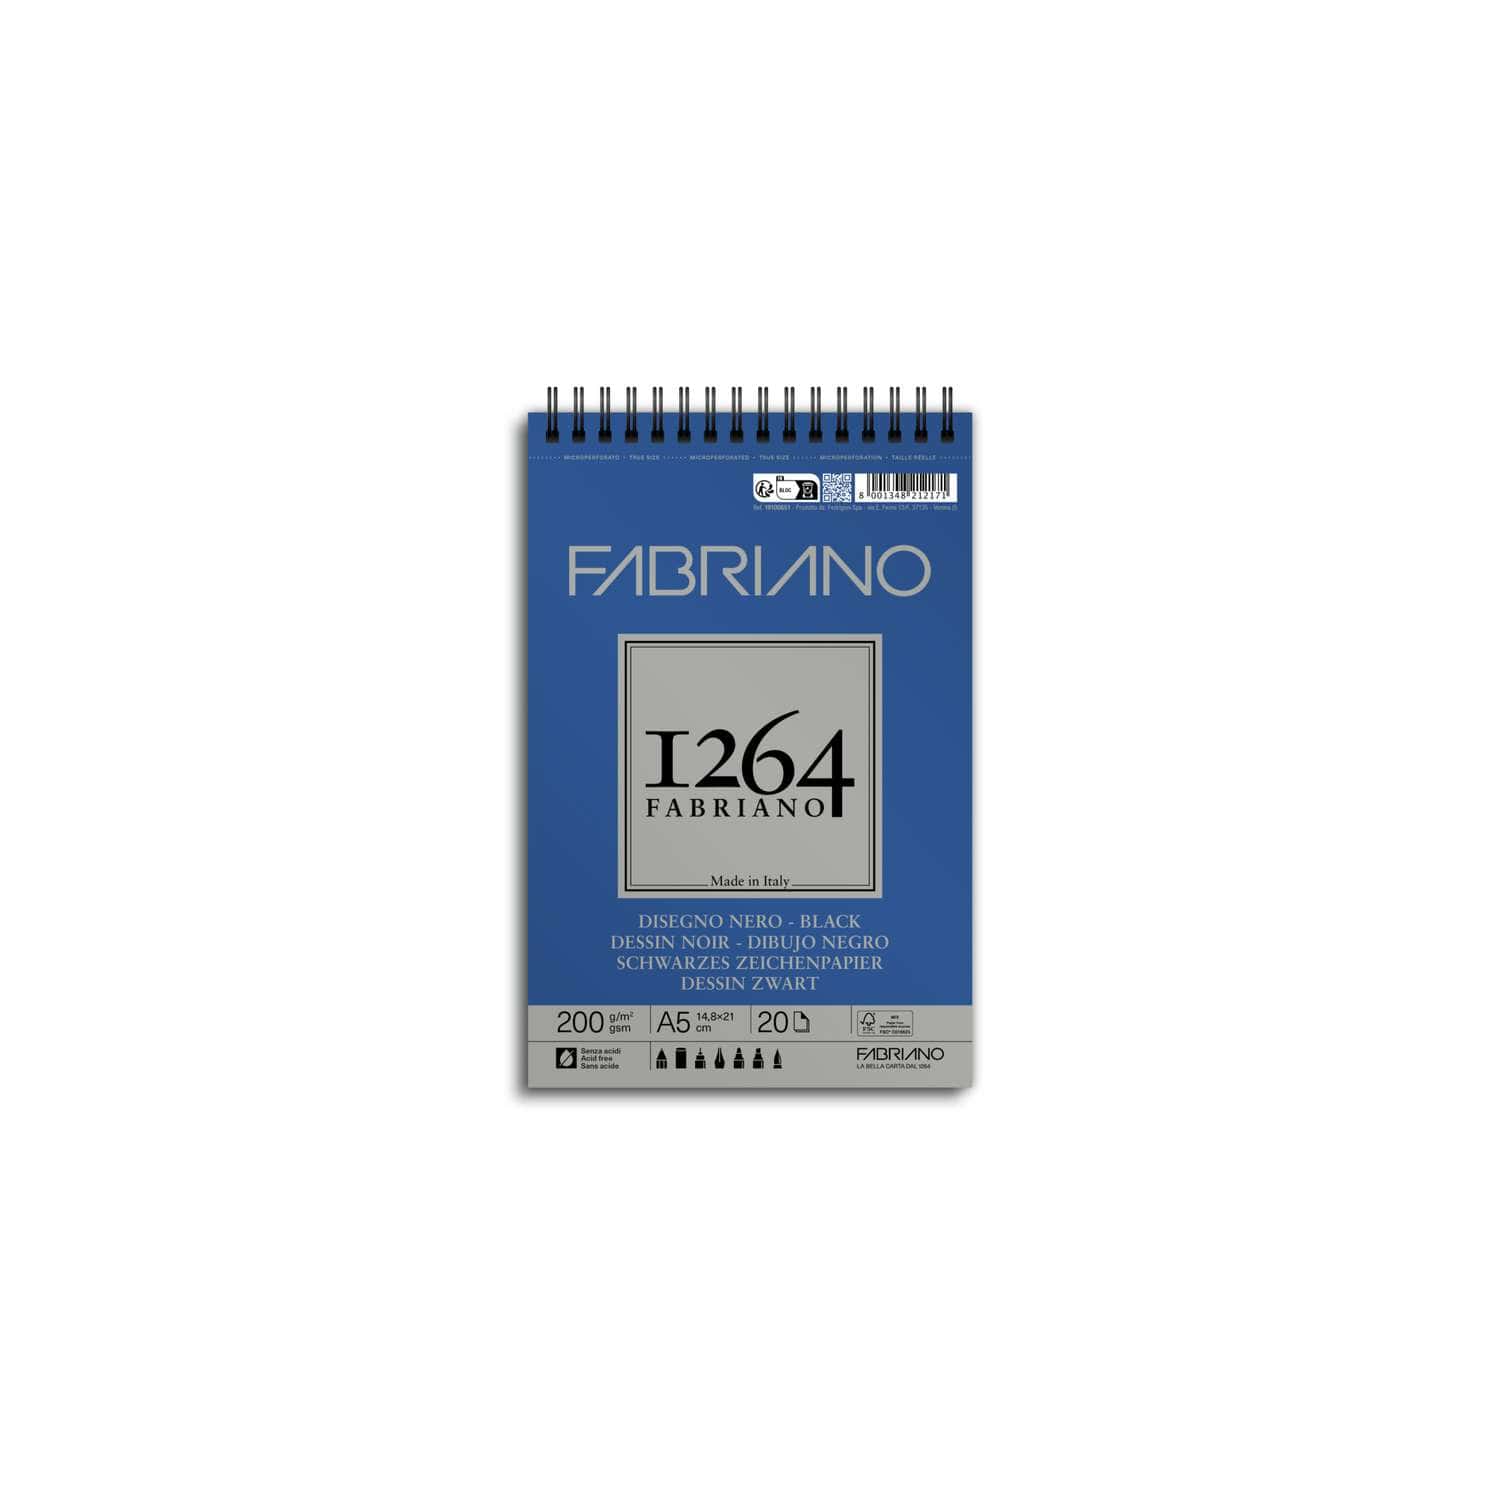 Fabriano - 1264, Blocco da disegno nero